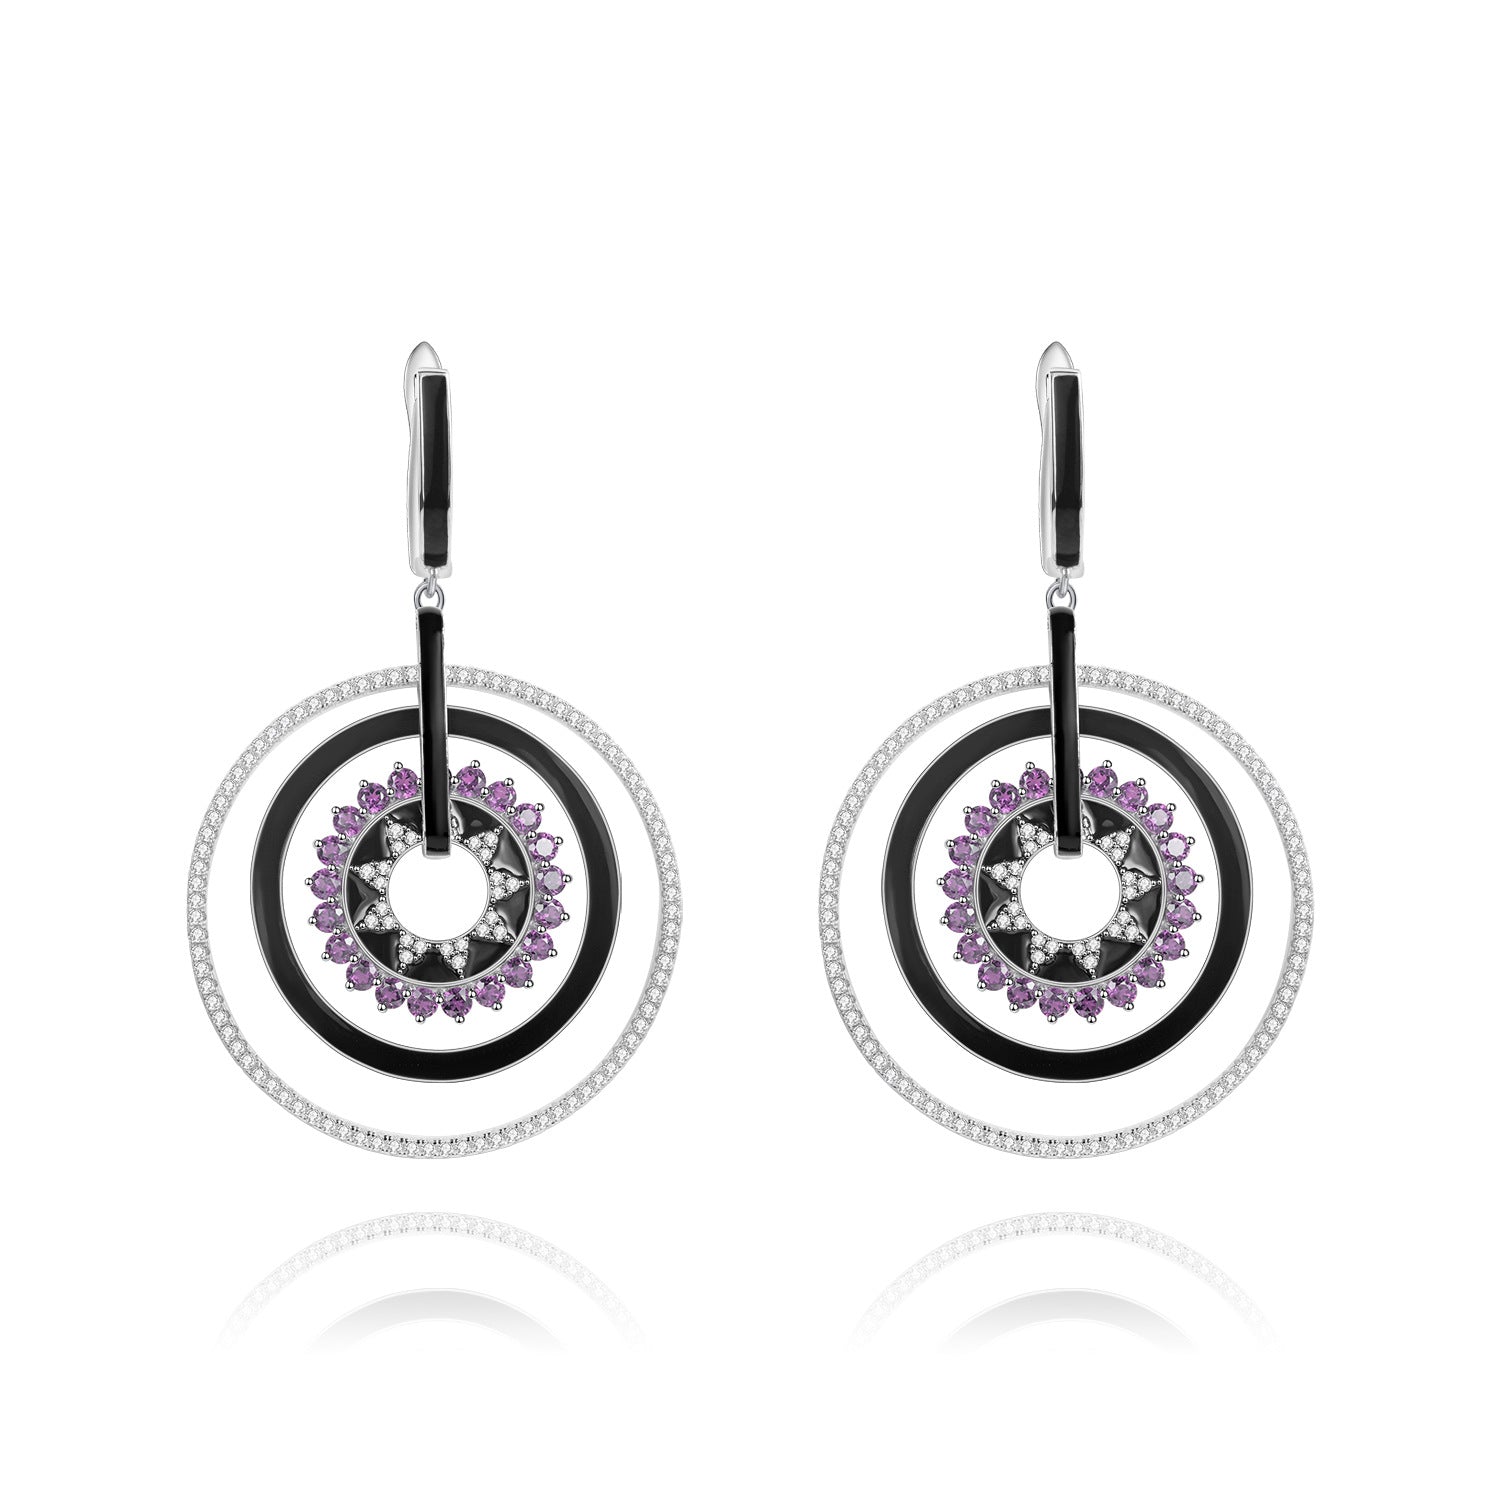 Colourful Gemstones Enamel Ring Design Silver Drop Earrings for Women